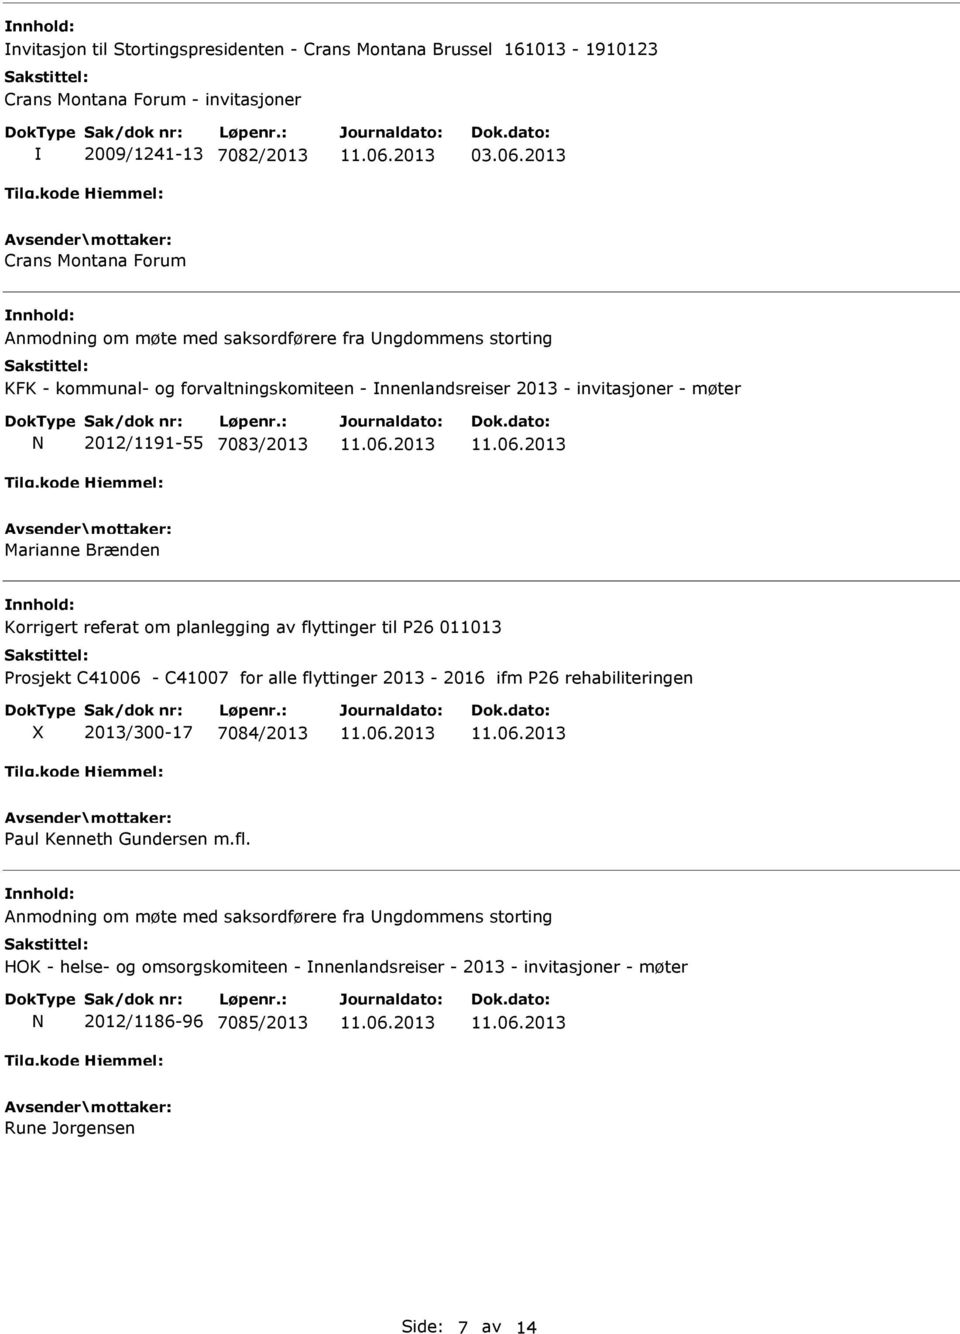 2012/1191-55 7083/2013 Marianne Brænden Korrigert referat om planlegging av flyttinger til P26 011013 Prosjekt C41006 - C41007 for alle flyttinger 2013-2016 ifm P26 rehabiliteringen